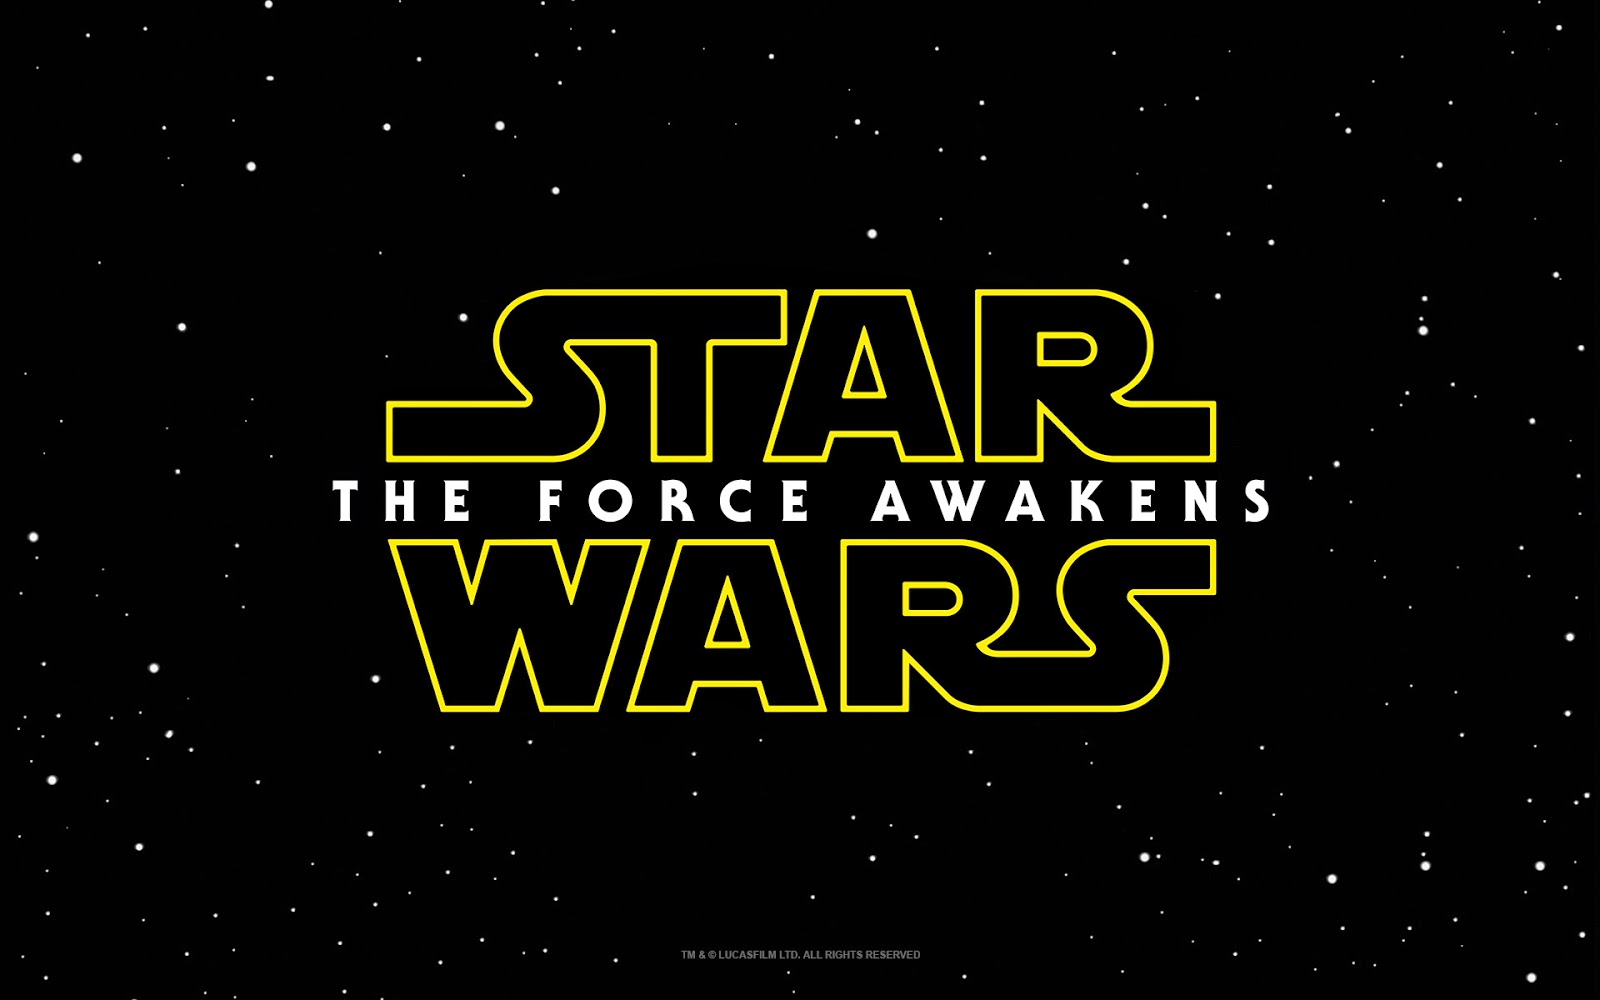 http://okoknoinc.blogspot.com/2015/04/watch-star-wars-force-awakens-trailer.html